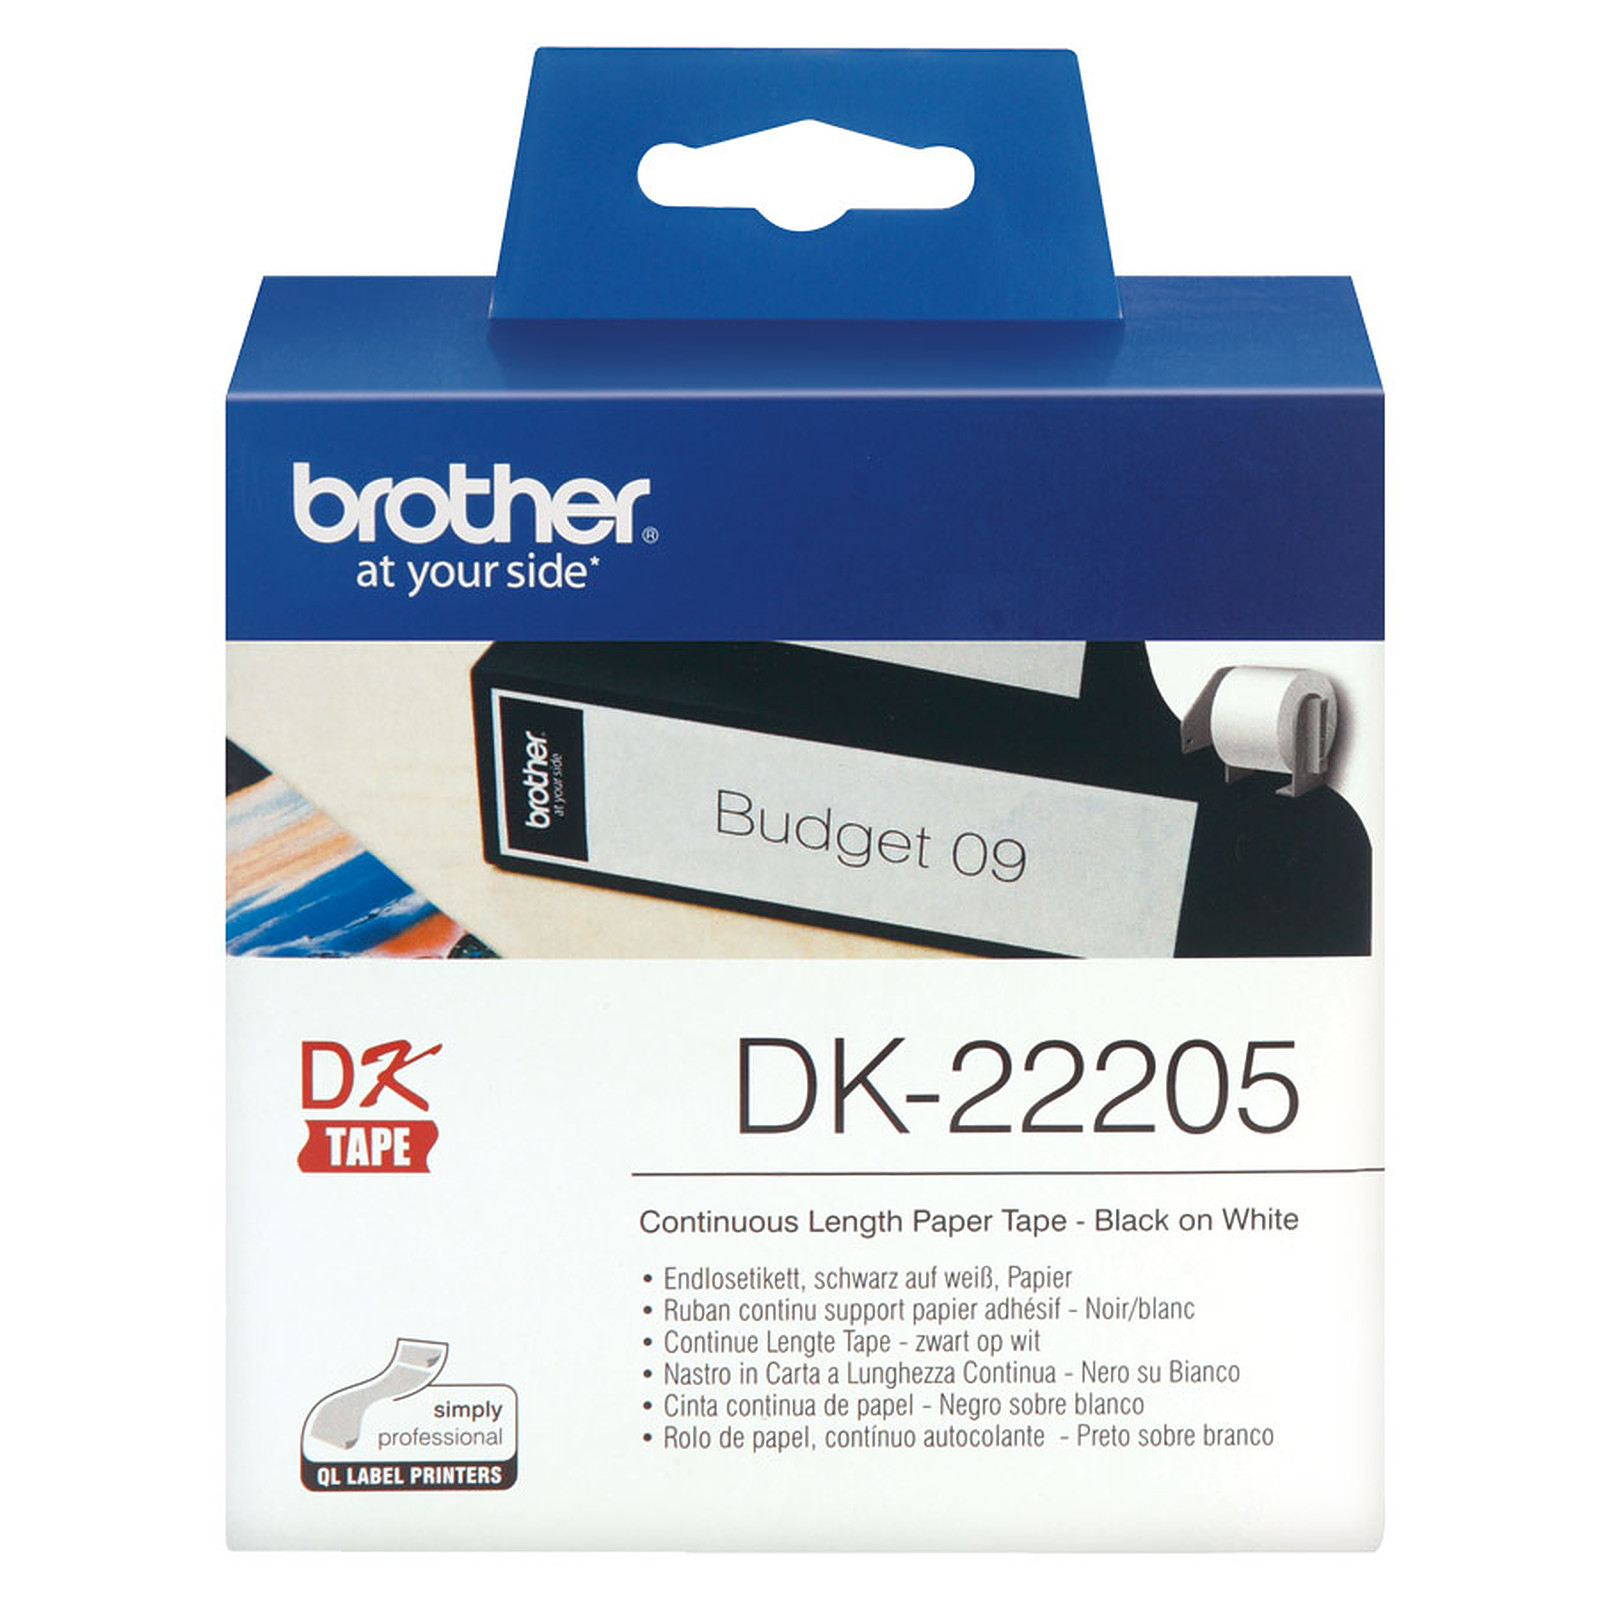 Ruban de papier continu noir sur blanc DK-22205 Brother Original, largeur 62 mm, longueur 30,48 m, Windows et Linux, Informatique Runion 974